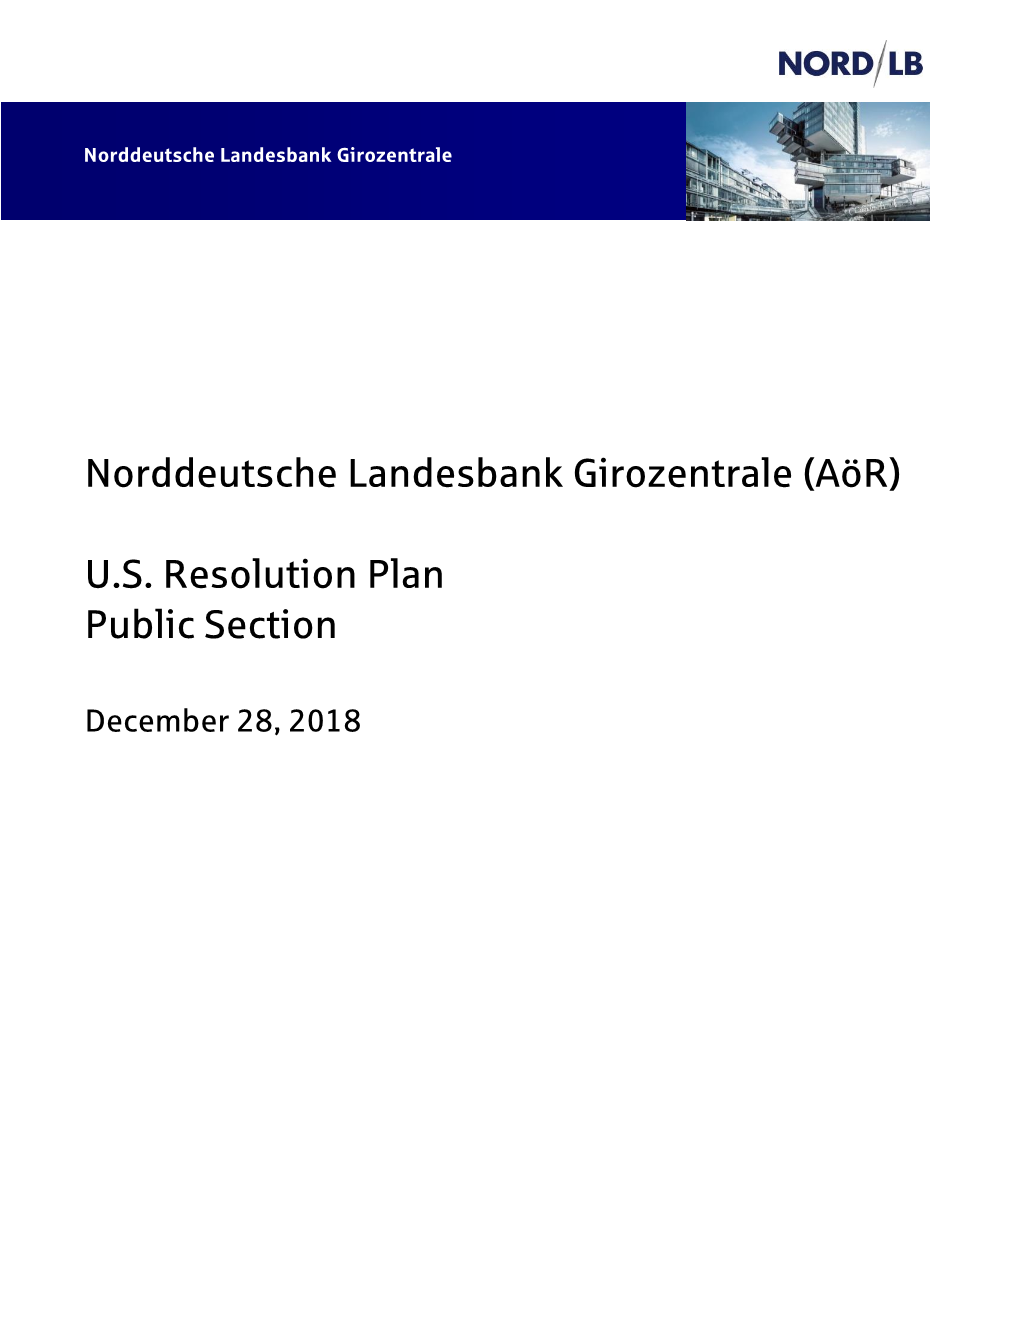 Norddeutsche Landesbank Girozentrale (Aör) U.S. Resolution Plan Public Section